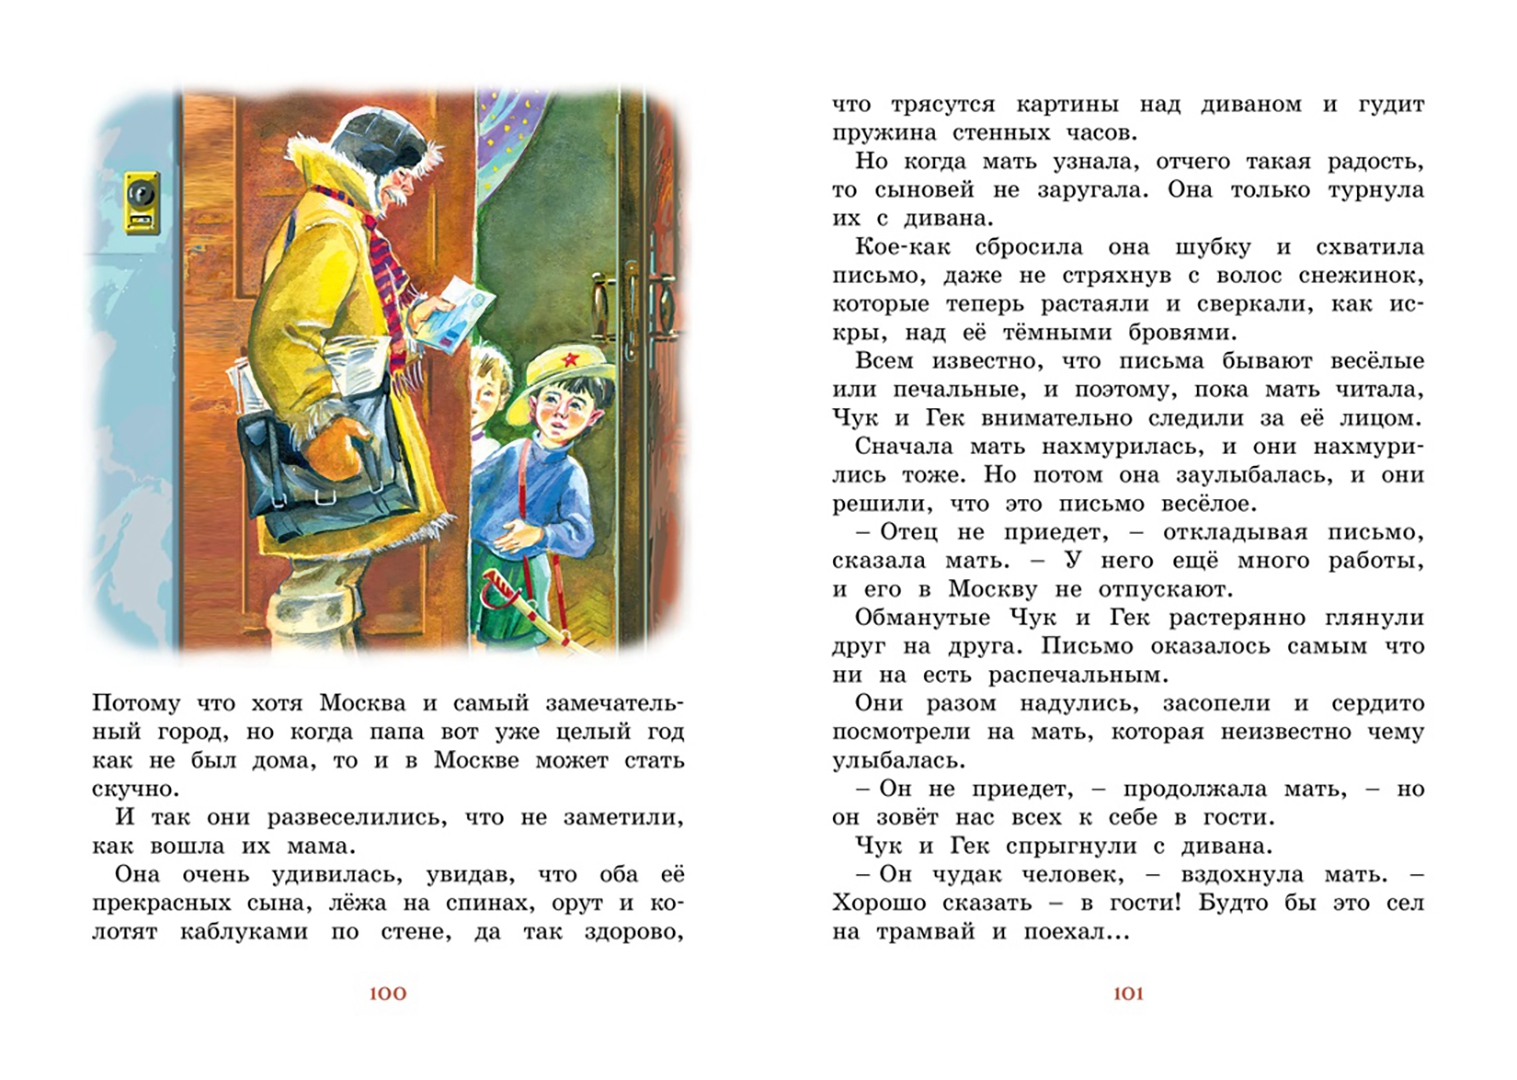 Аркадий Гайдар и его книгой «Чук и Гек». О книге